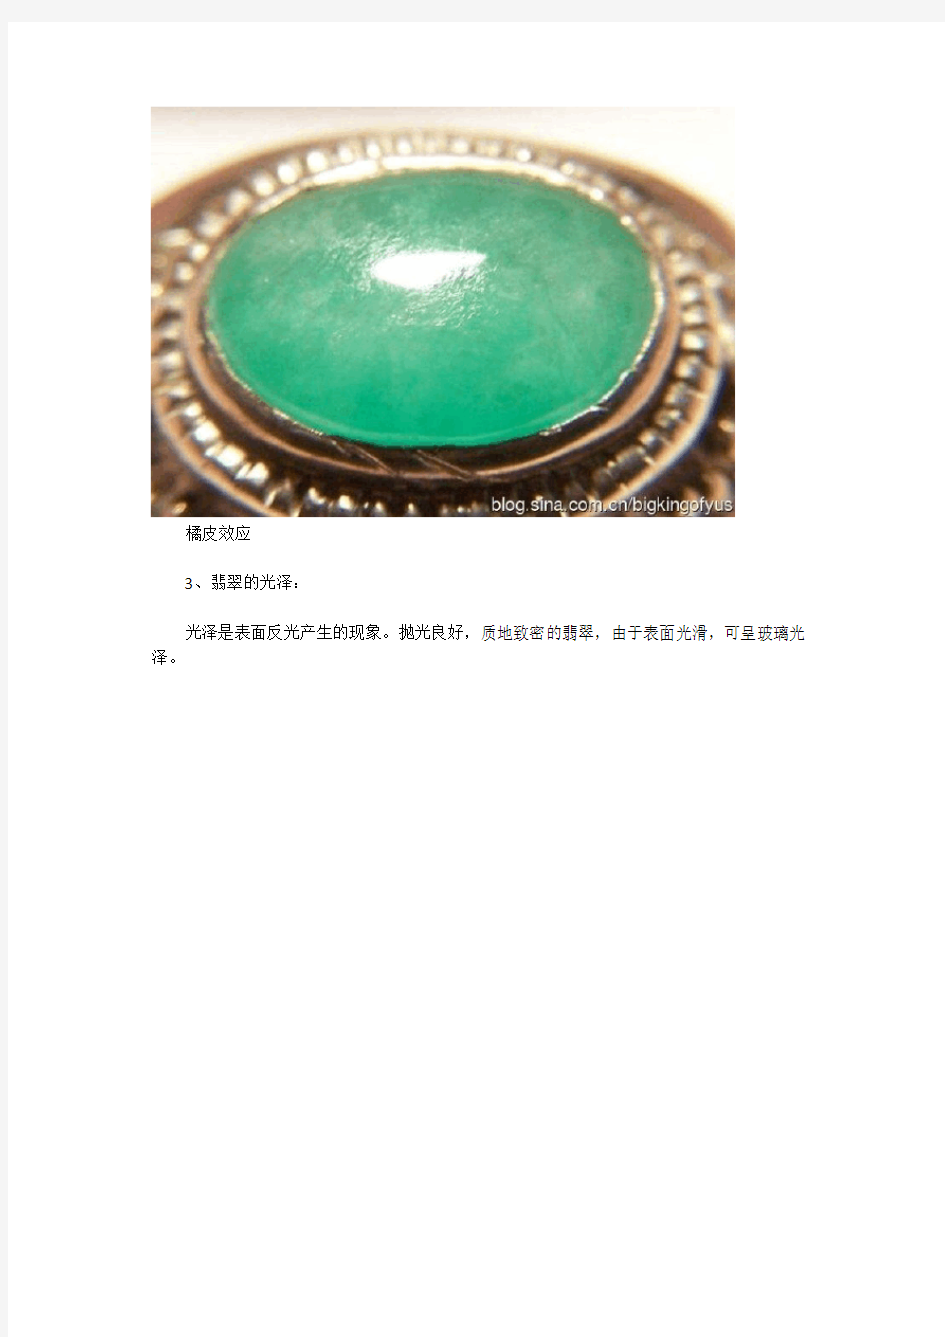 翡翠和相似的绿色宝石的鉴别方法